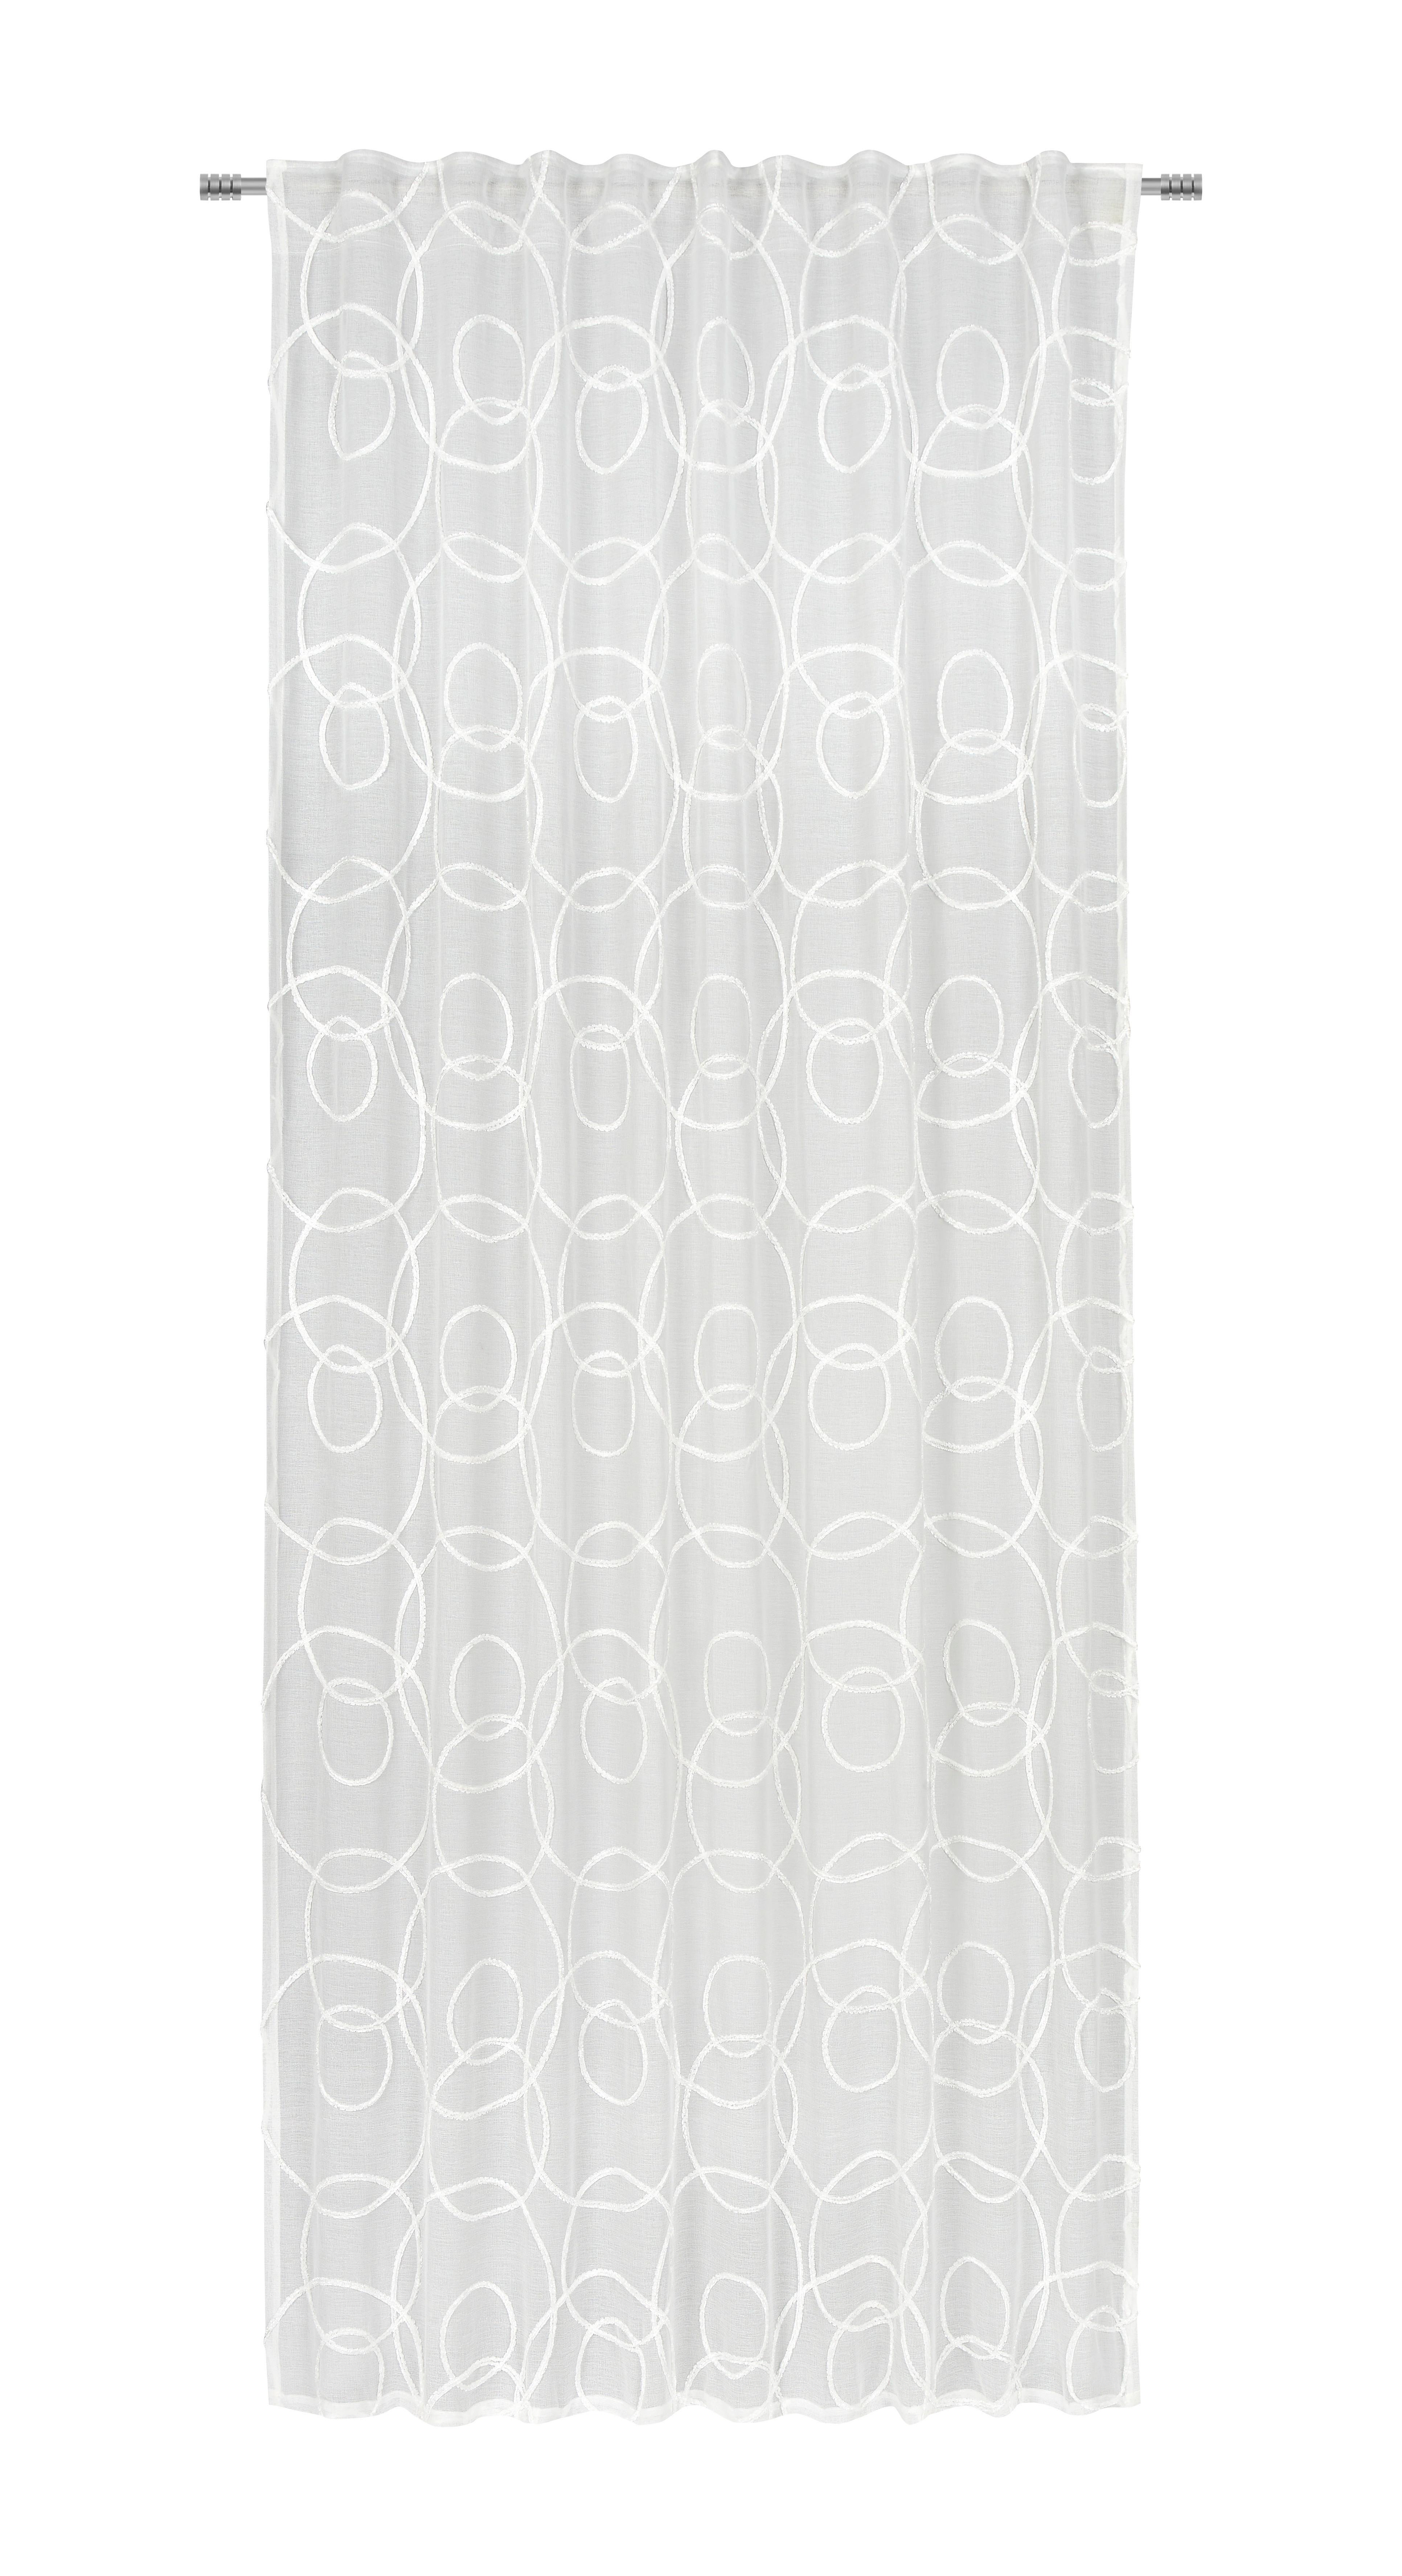 Készfüggöny Circle 135/245 - Pezsgő, konvencionális, Textil (135/245cm) - Modern Living